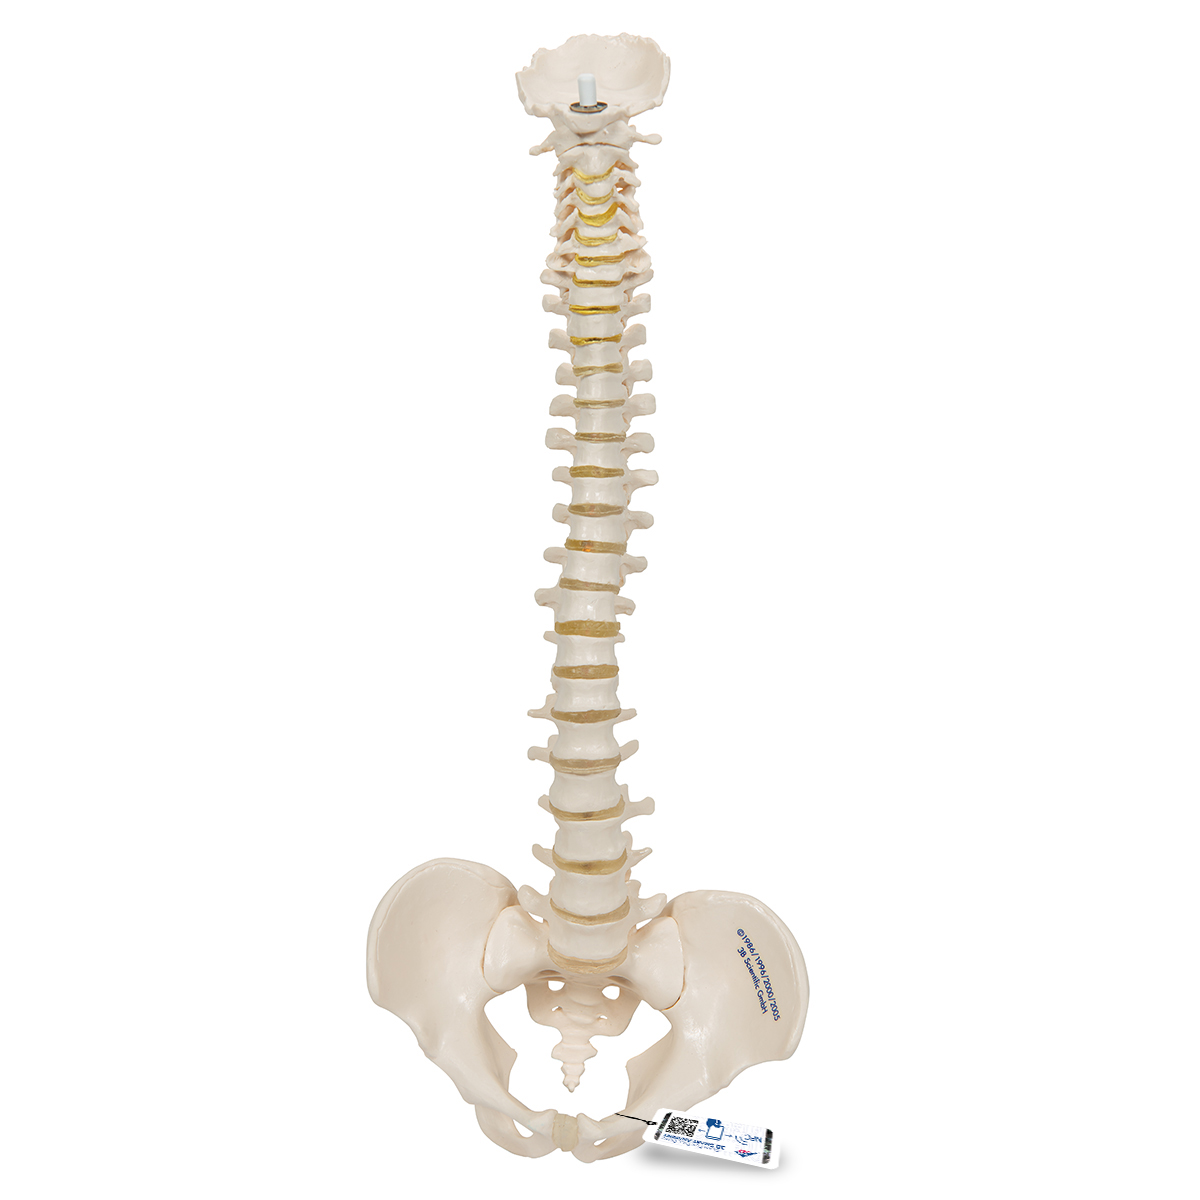 Mini Anatomie Modell Menschliche Wirbelsäule, beweglich und mit Becken, ohne Stativ - 3B Smart Anatomy, Bestellnummer 1000042, A18/20, 3B Scientific